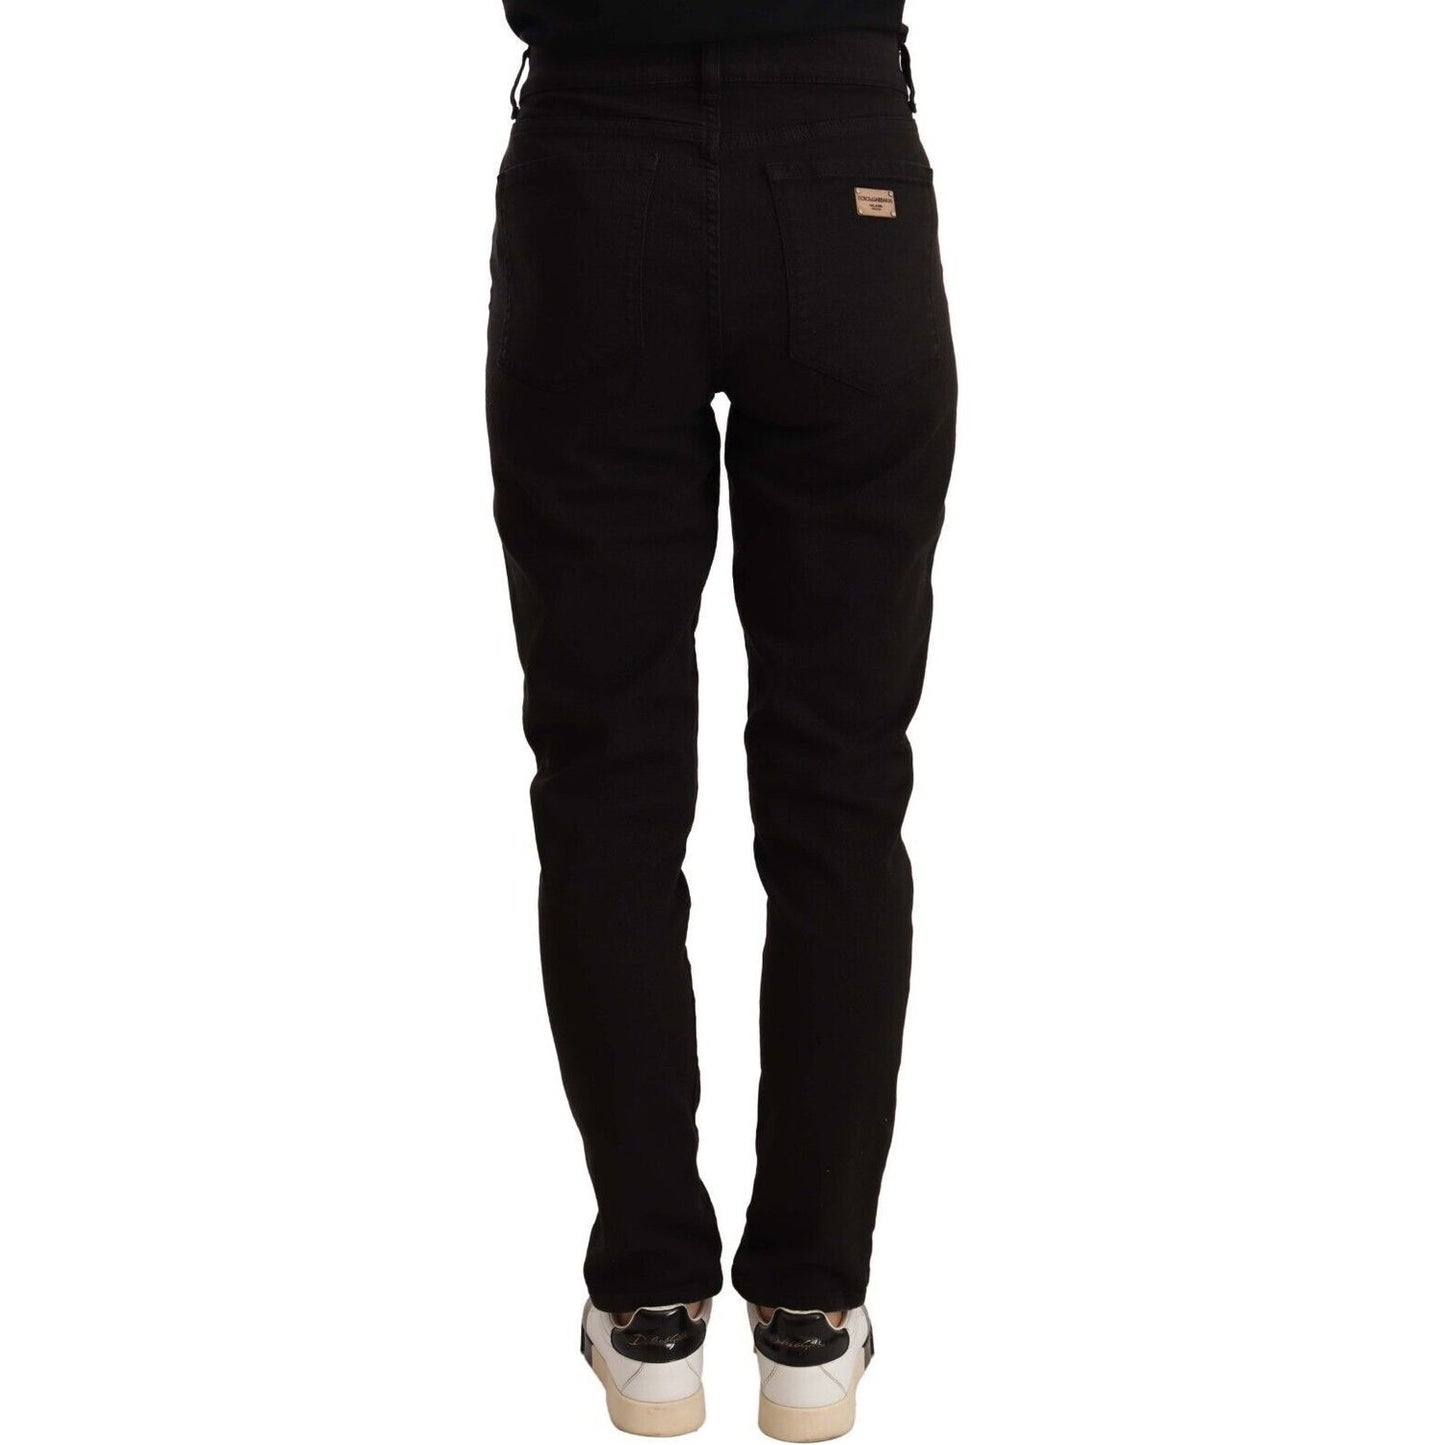 Dolce & Gabbana Elegant Slim-Fit Black Skinny Jeans black-skinny-slim-denim-cotton-stretch-jeans-2